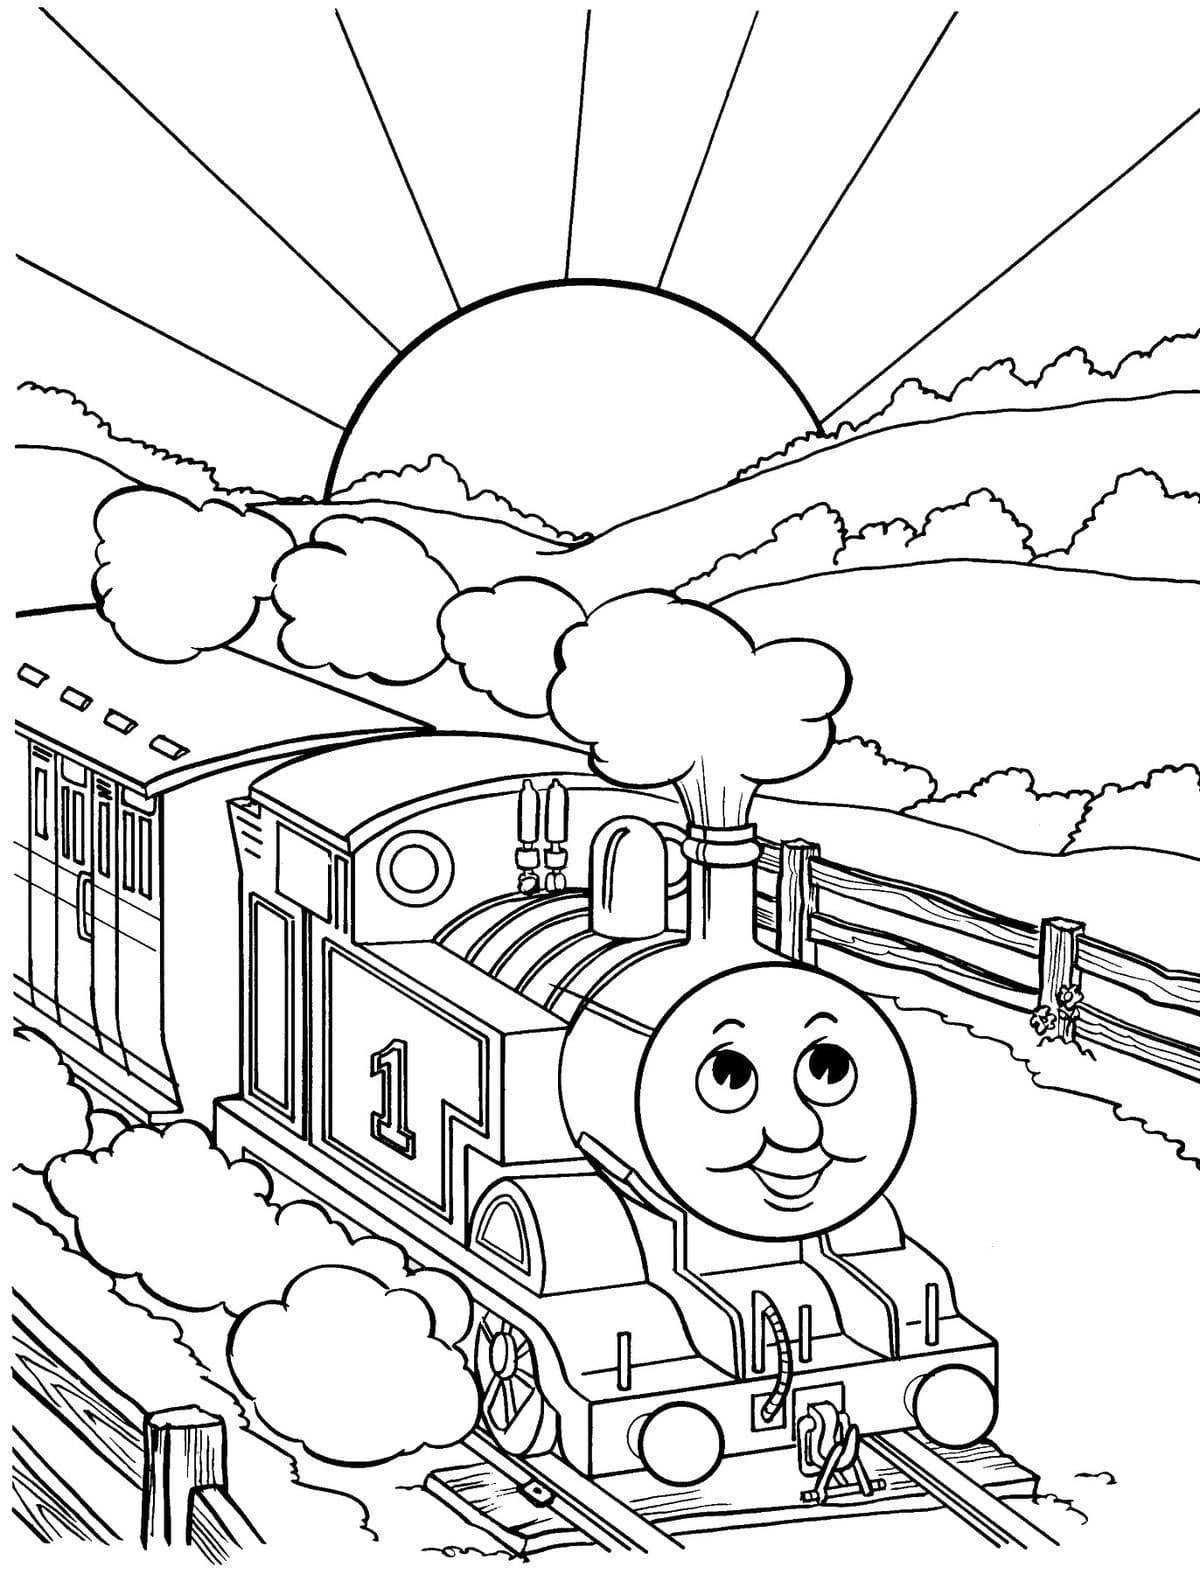 Thomas' fun coloring book